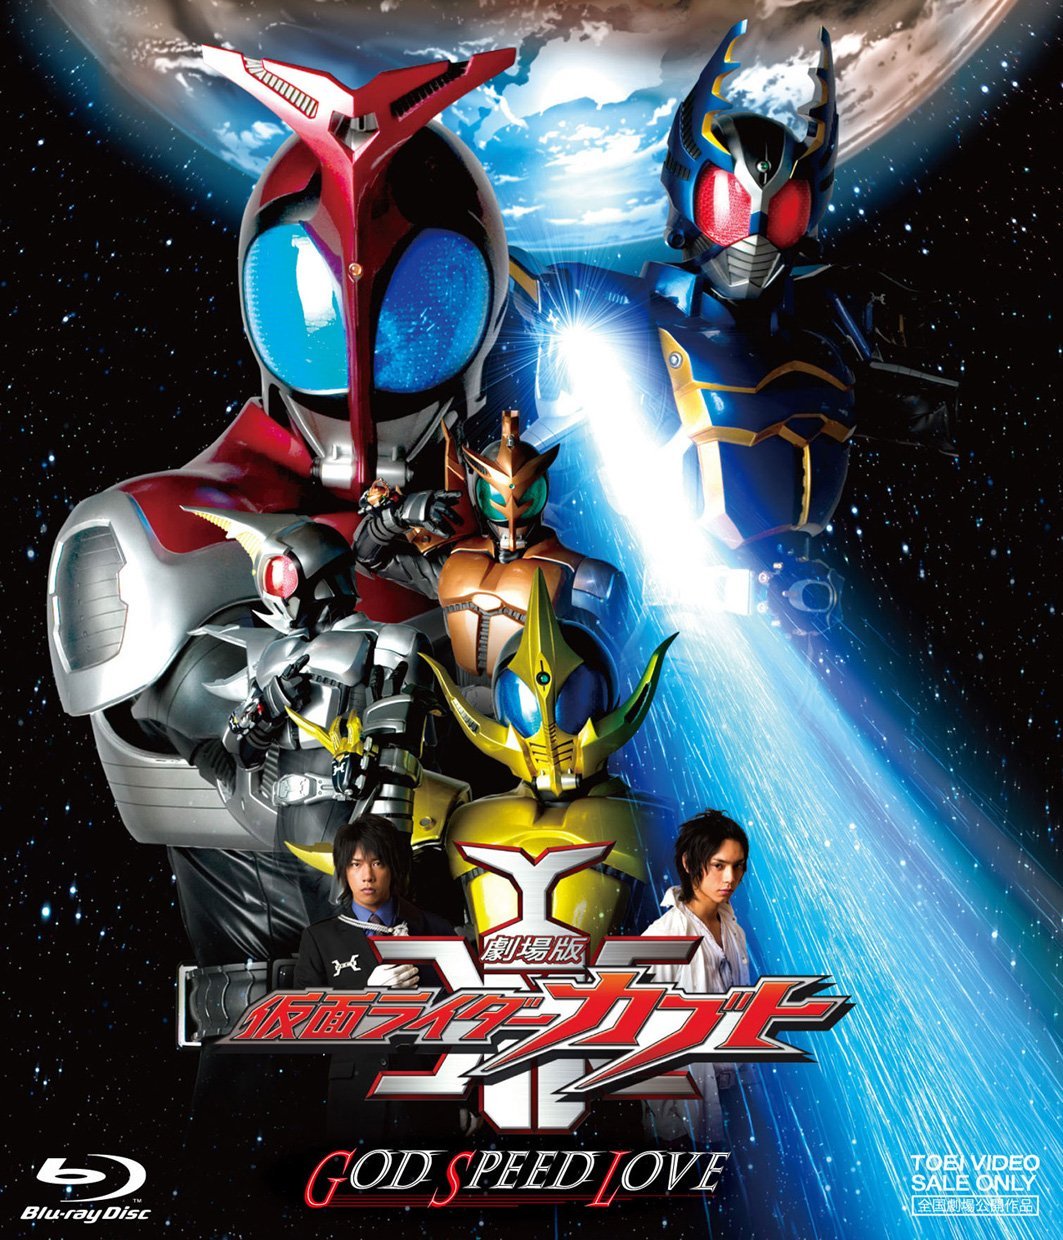 Kamen Rider Movie Download - Watch Kamen Rider W Returns: Kamen Rider Accel (2011) Full : A